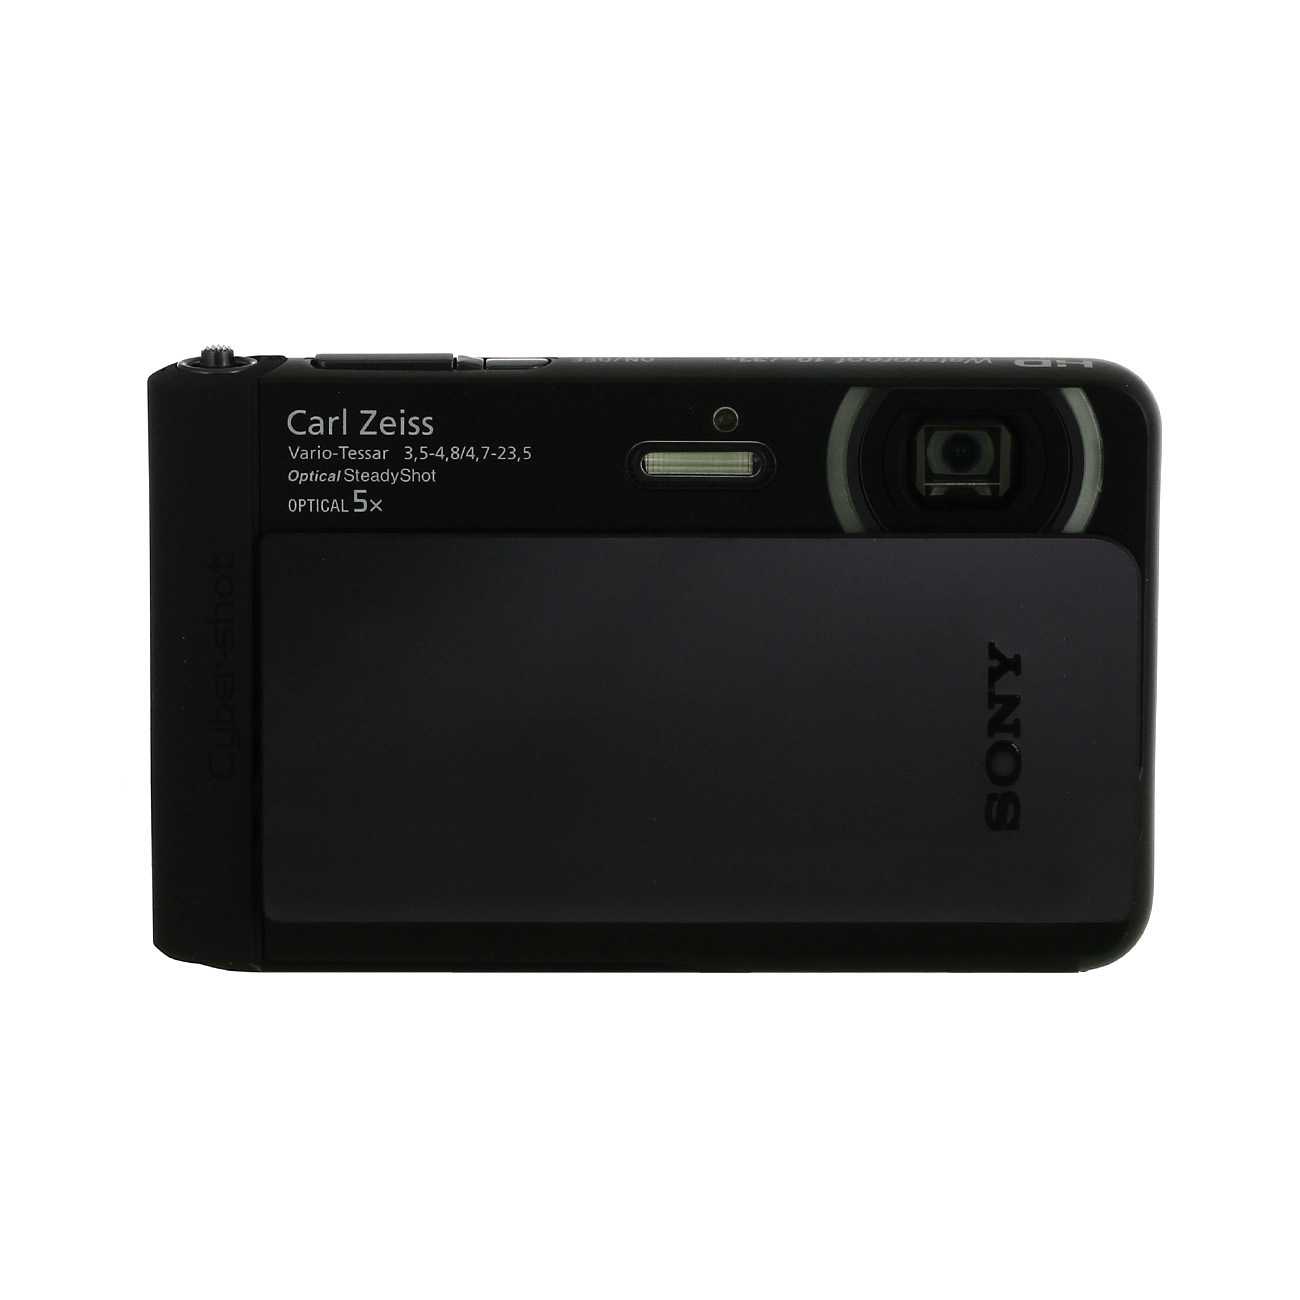 Цифровой фотоаппарат Sony Cyber-shot DSC-TX66 - подробные характеристики обзоры видео фото Цены в интернет-магазинах где можно купить цифровую фотоаппарат Sony Cyber-shot DSC-TX66